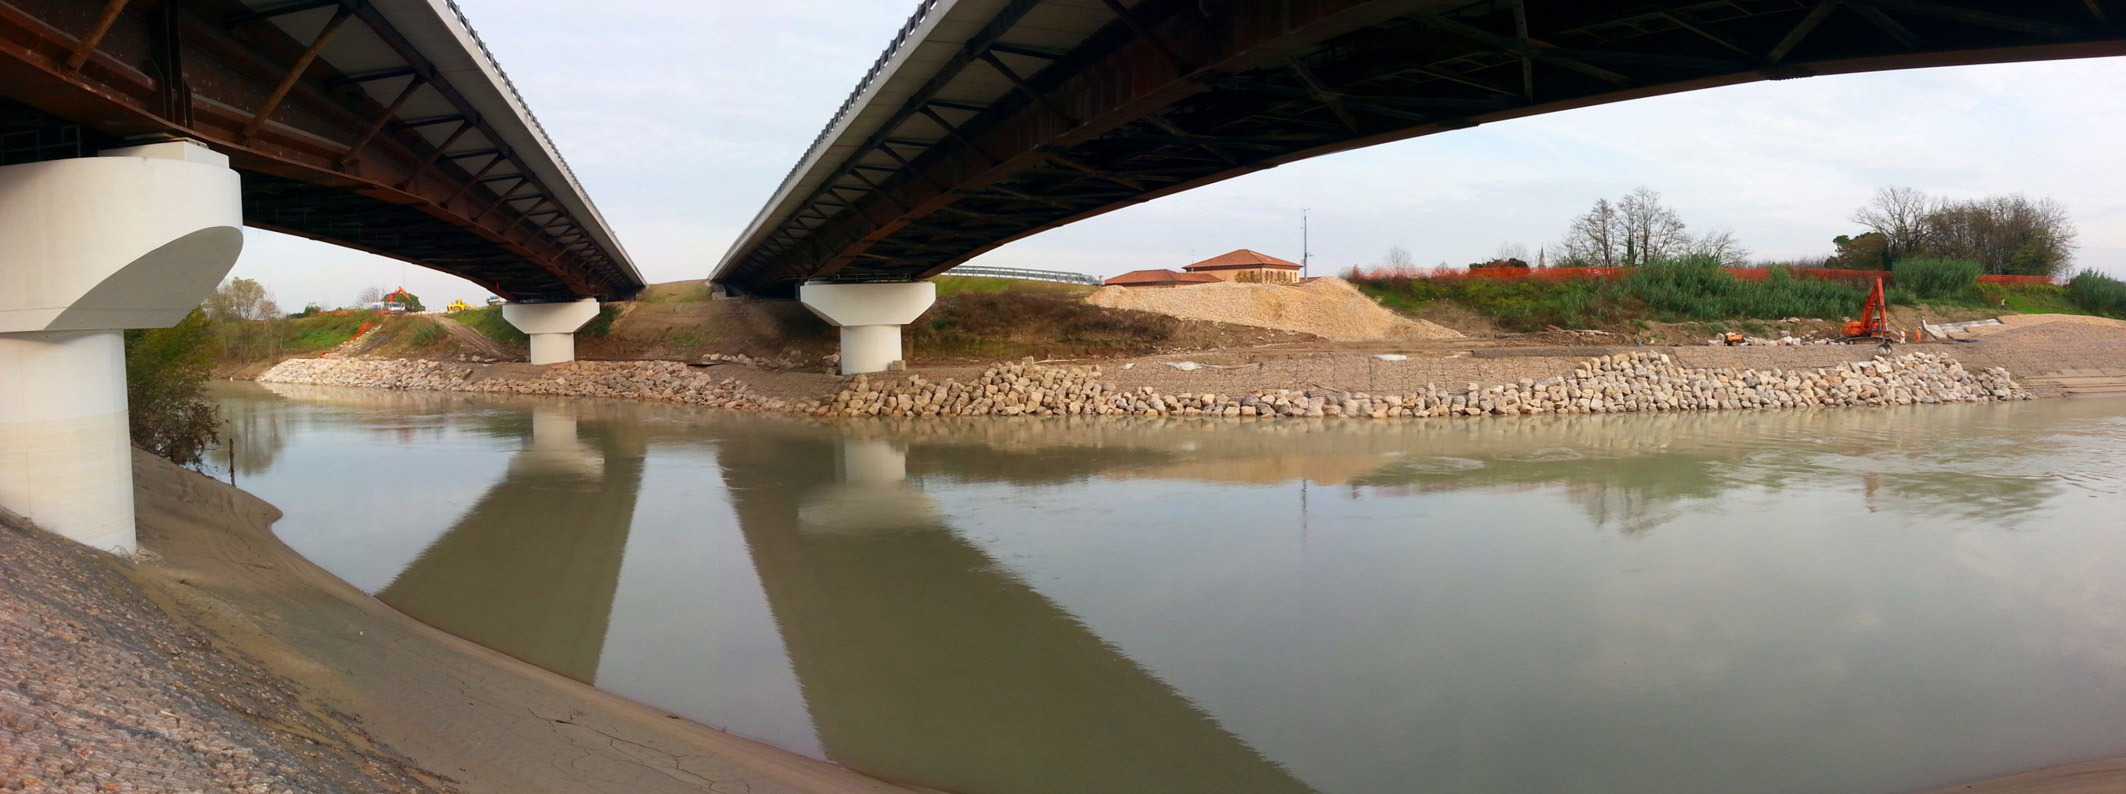 La struttura del ponte sul fiume Piave